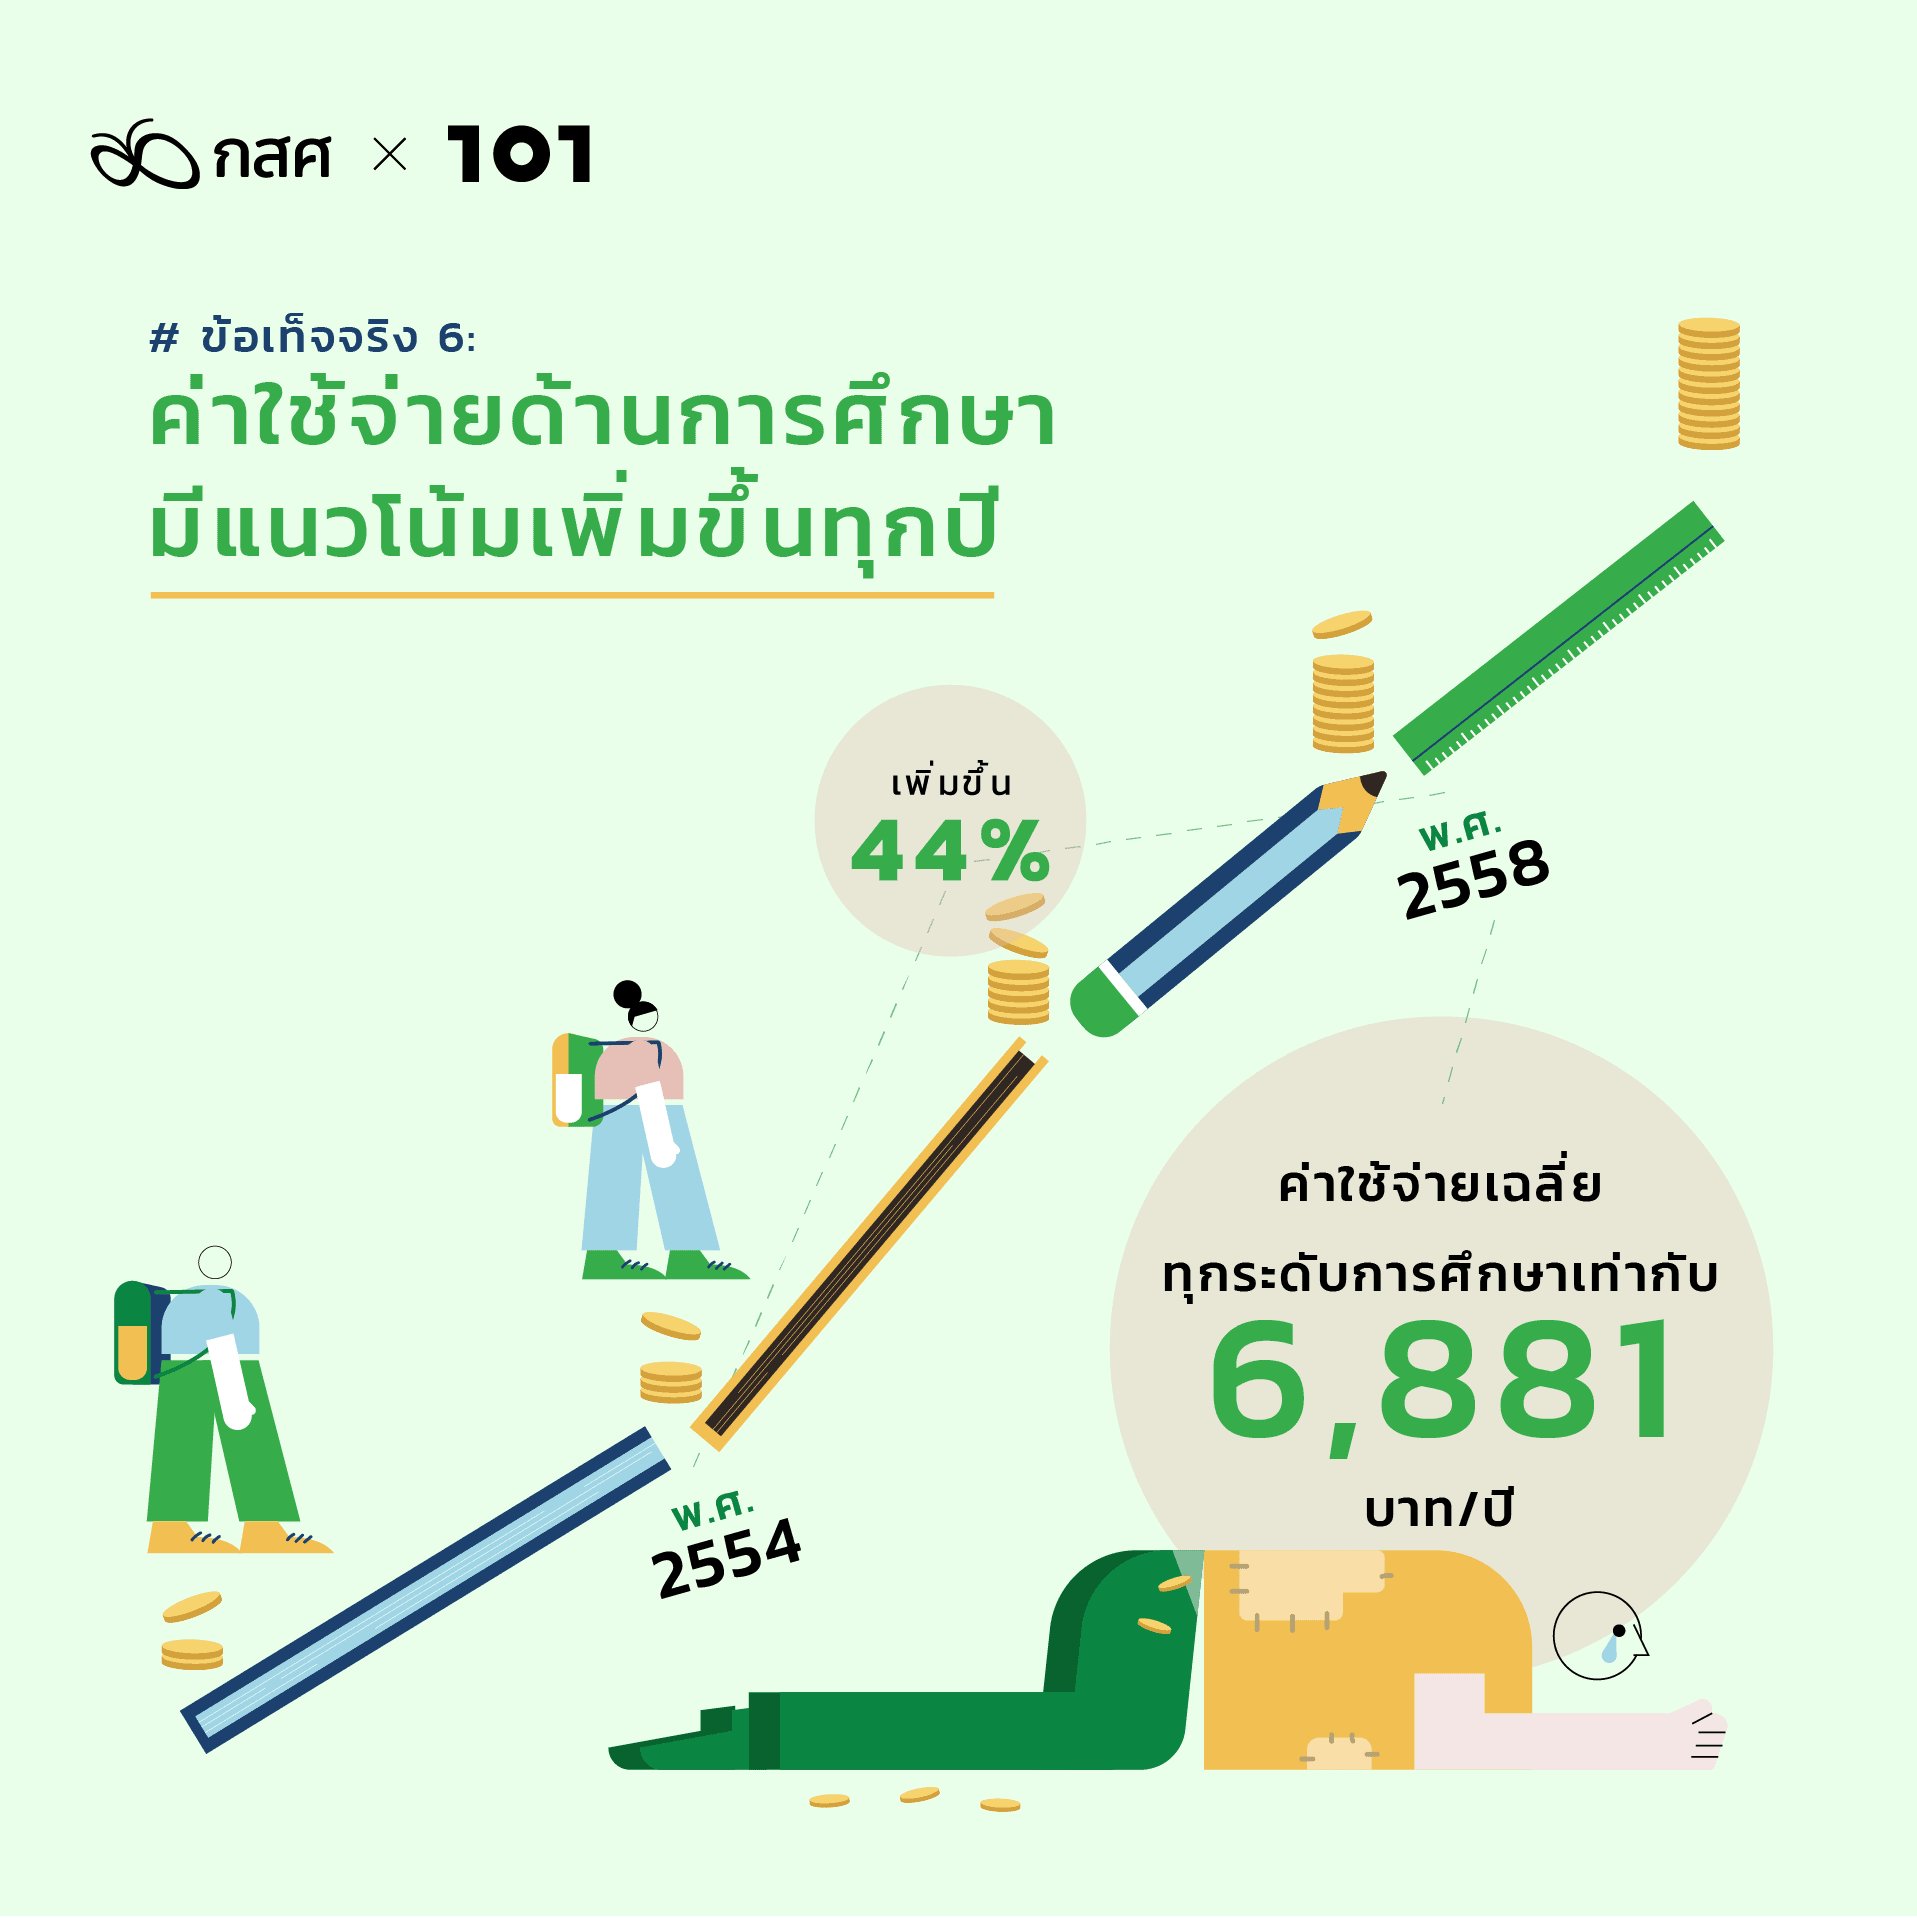 สำรวจความเหลื่อมล้ำการศึกษาไทย เพิ่มโอกาสให้เด็กยากจน: ข้อเท็จจริง 6: ค่าใช้จ่ายด้านการศึกษามีแนวโน้มเพิ่มขึ้นทุกปี